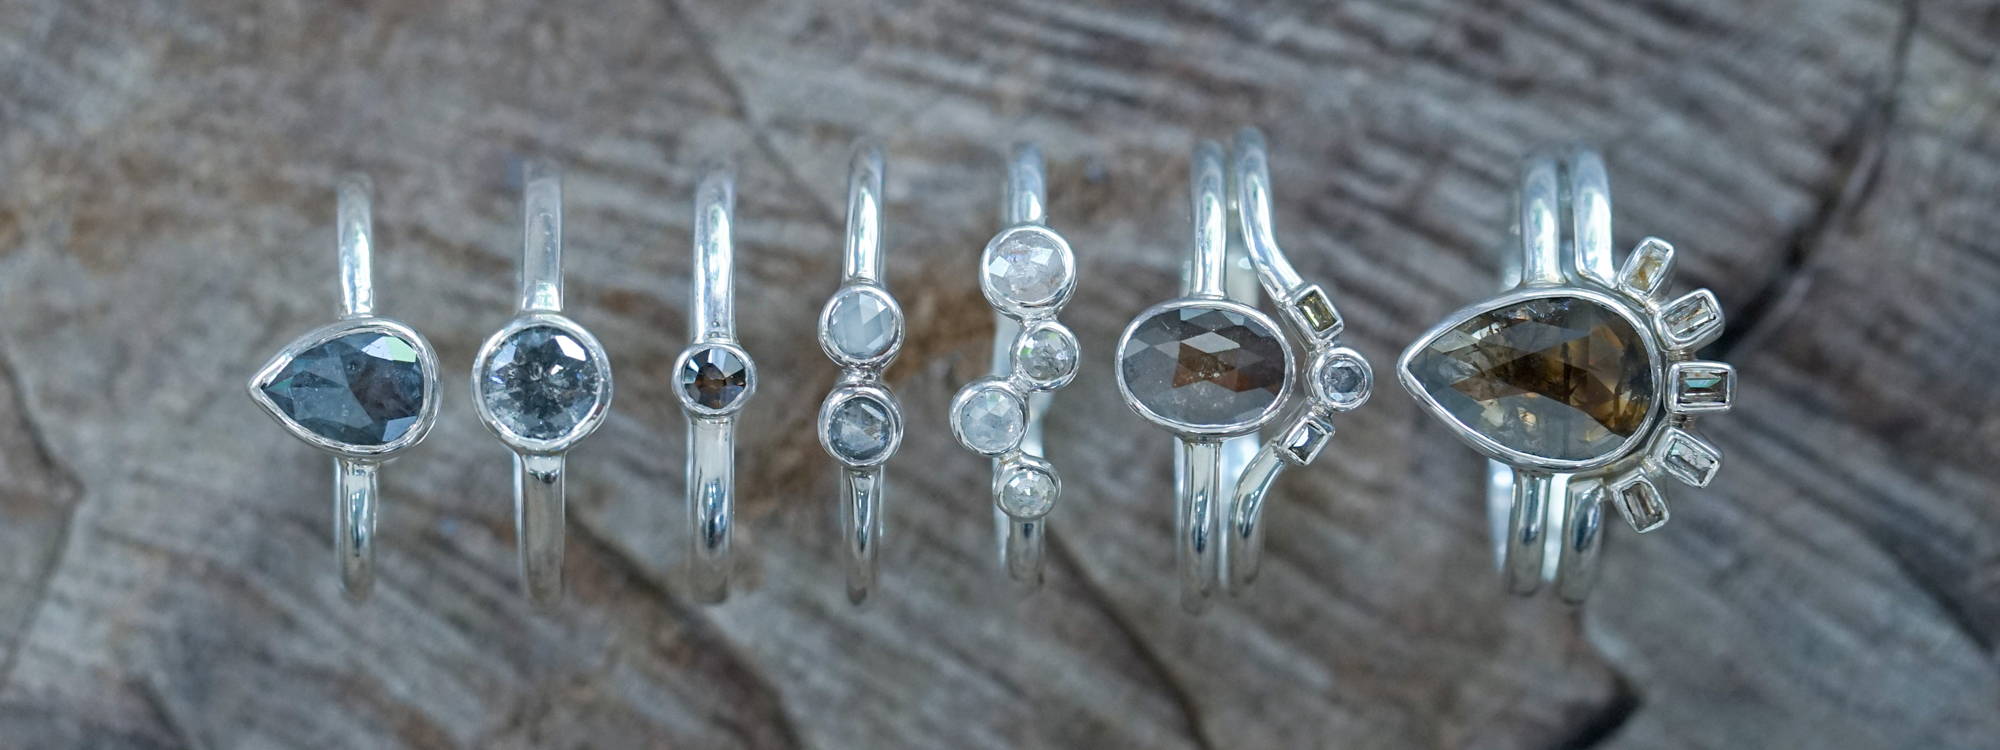 salt and pepper diamond rings